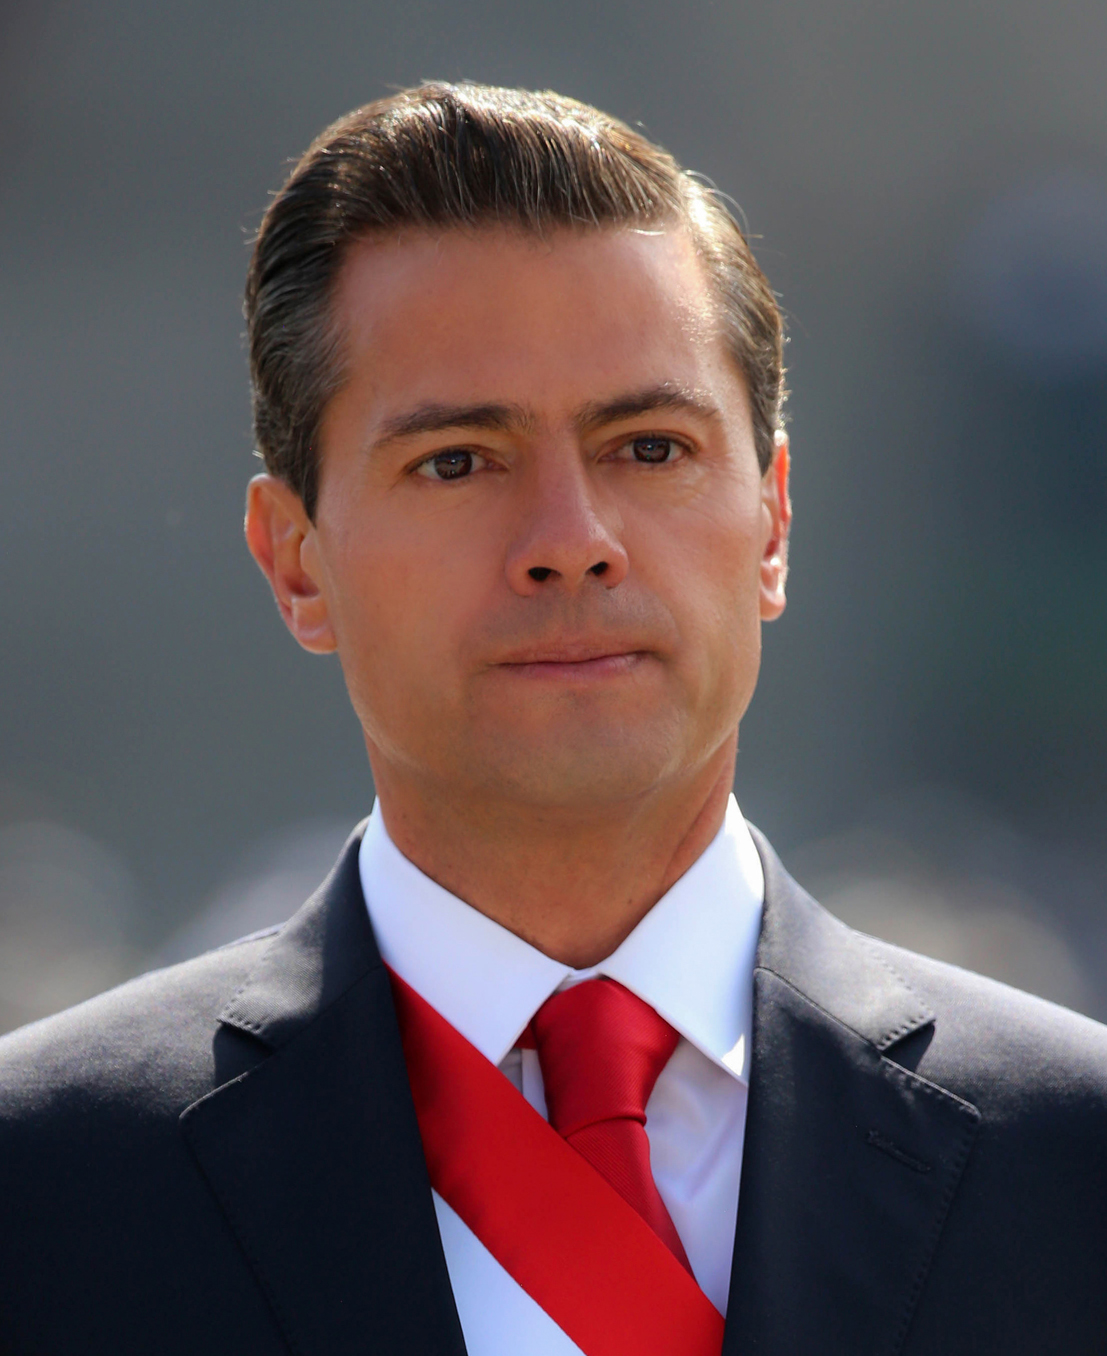 Enrique Peña Nieto - President of Mexico